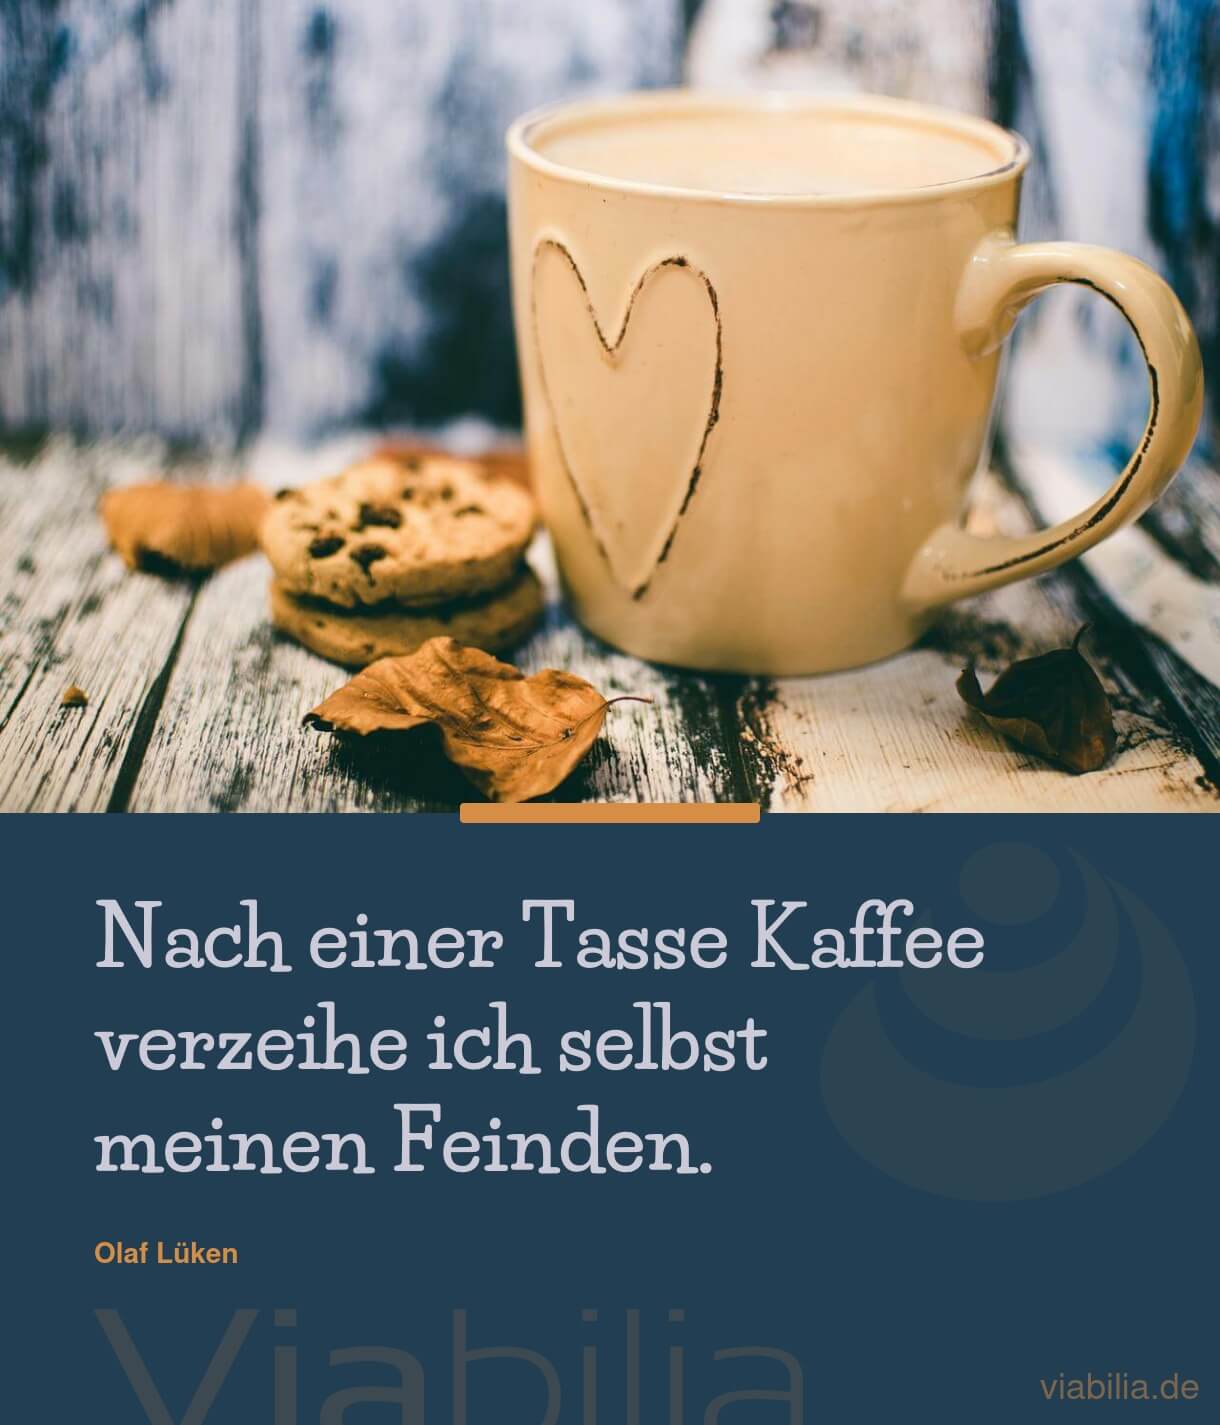 Spruch von Olaf Lüken: Tasse Kaffee und seinen Feinden verzeihen